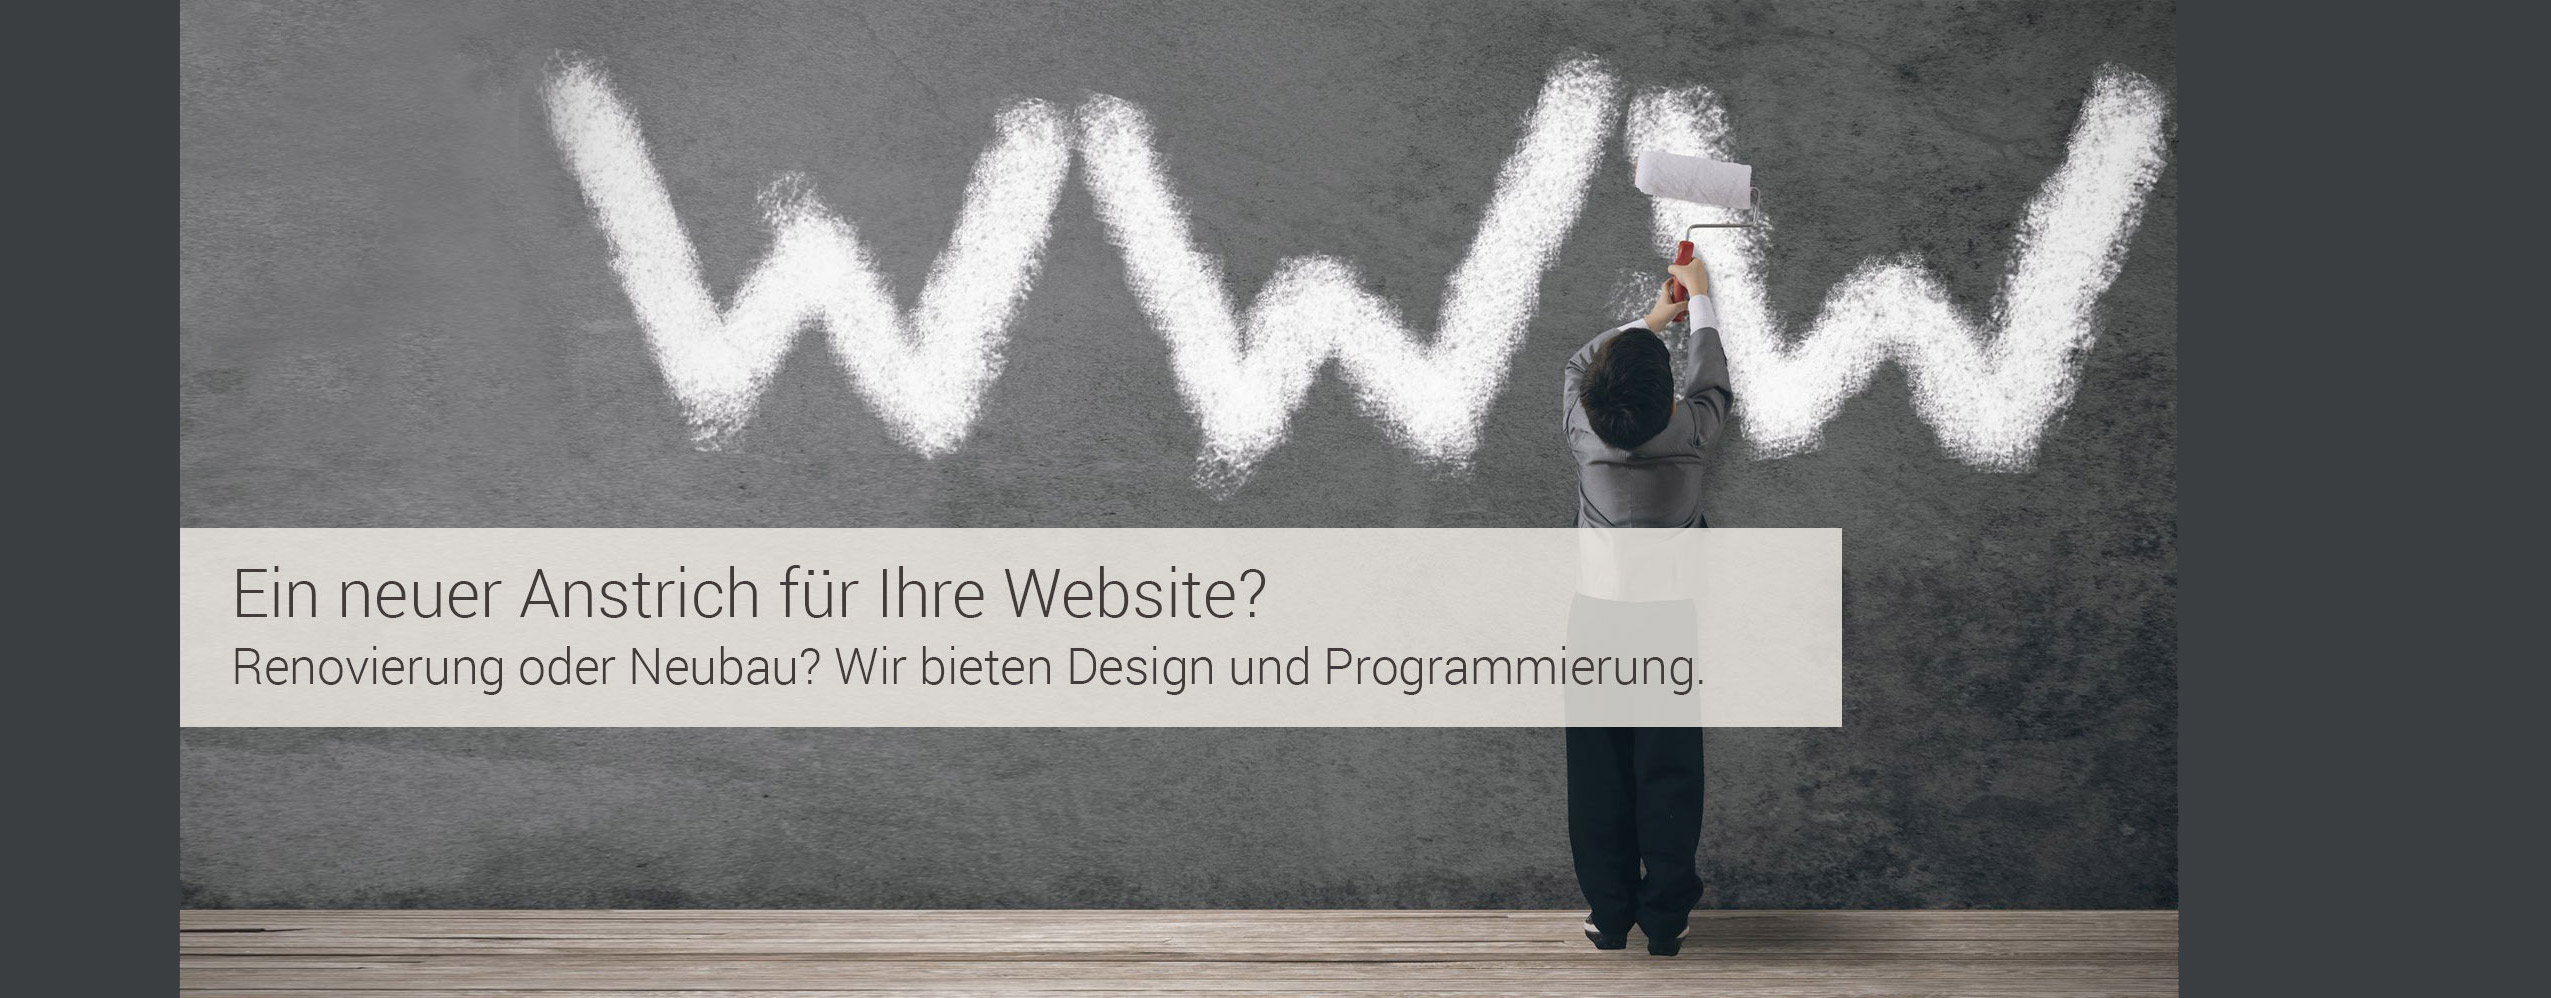 Webdesigner Werbeagentur Bochum Internetagentur